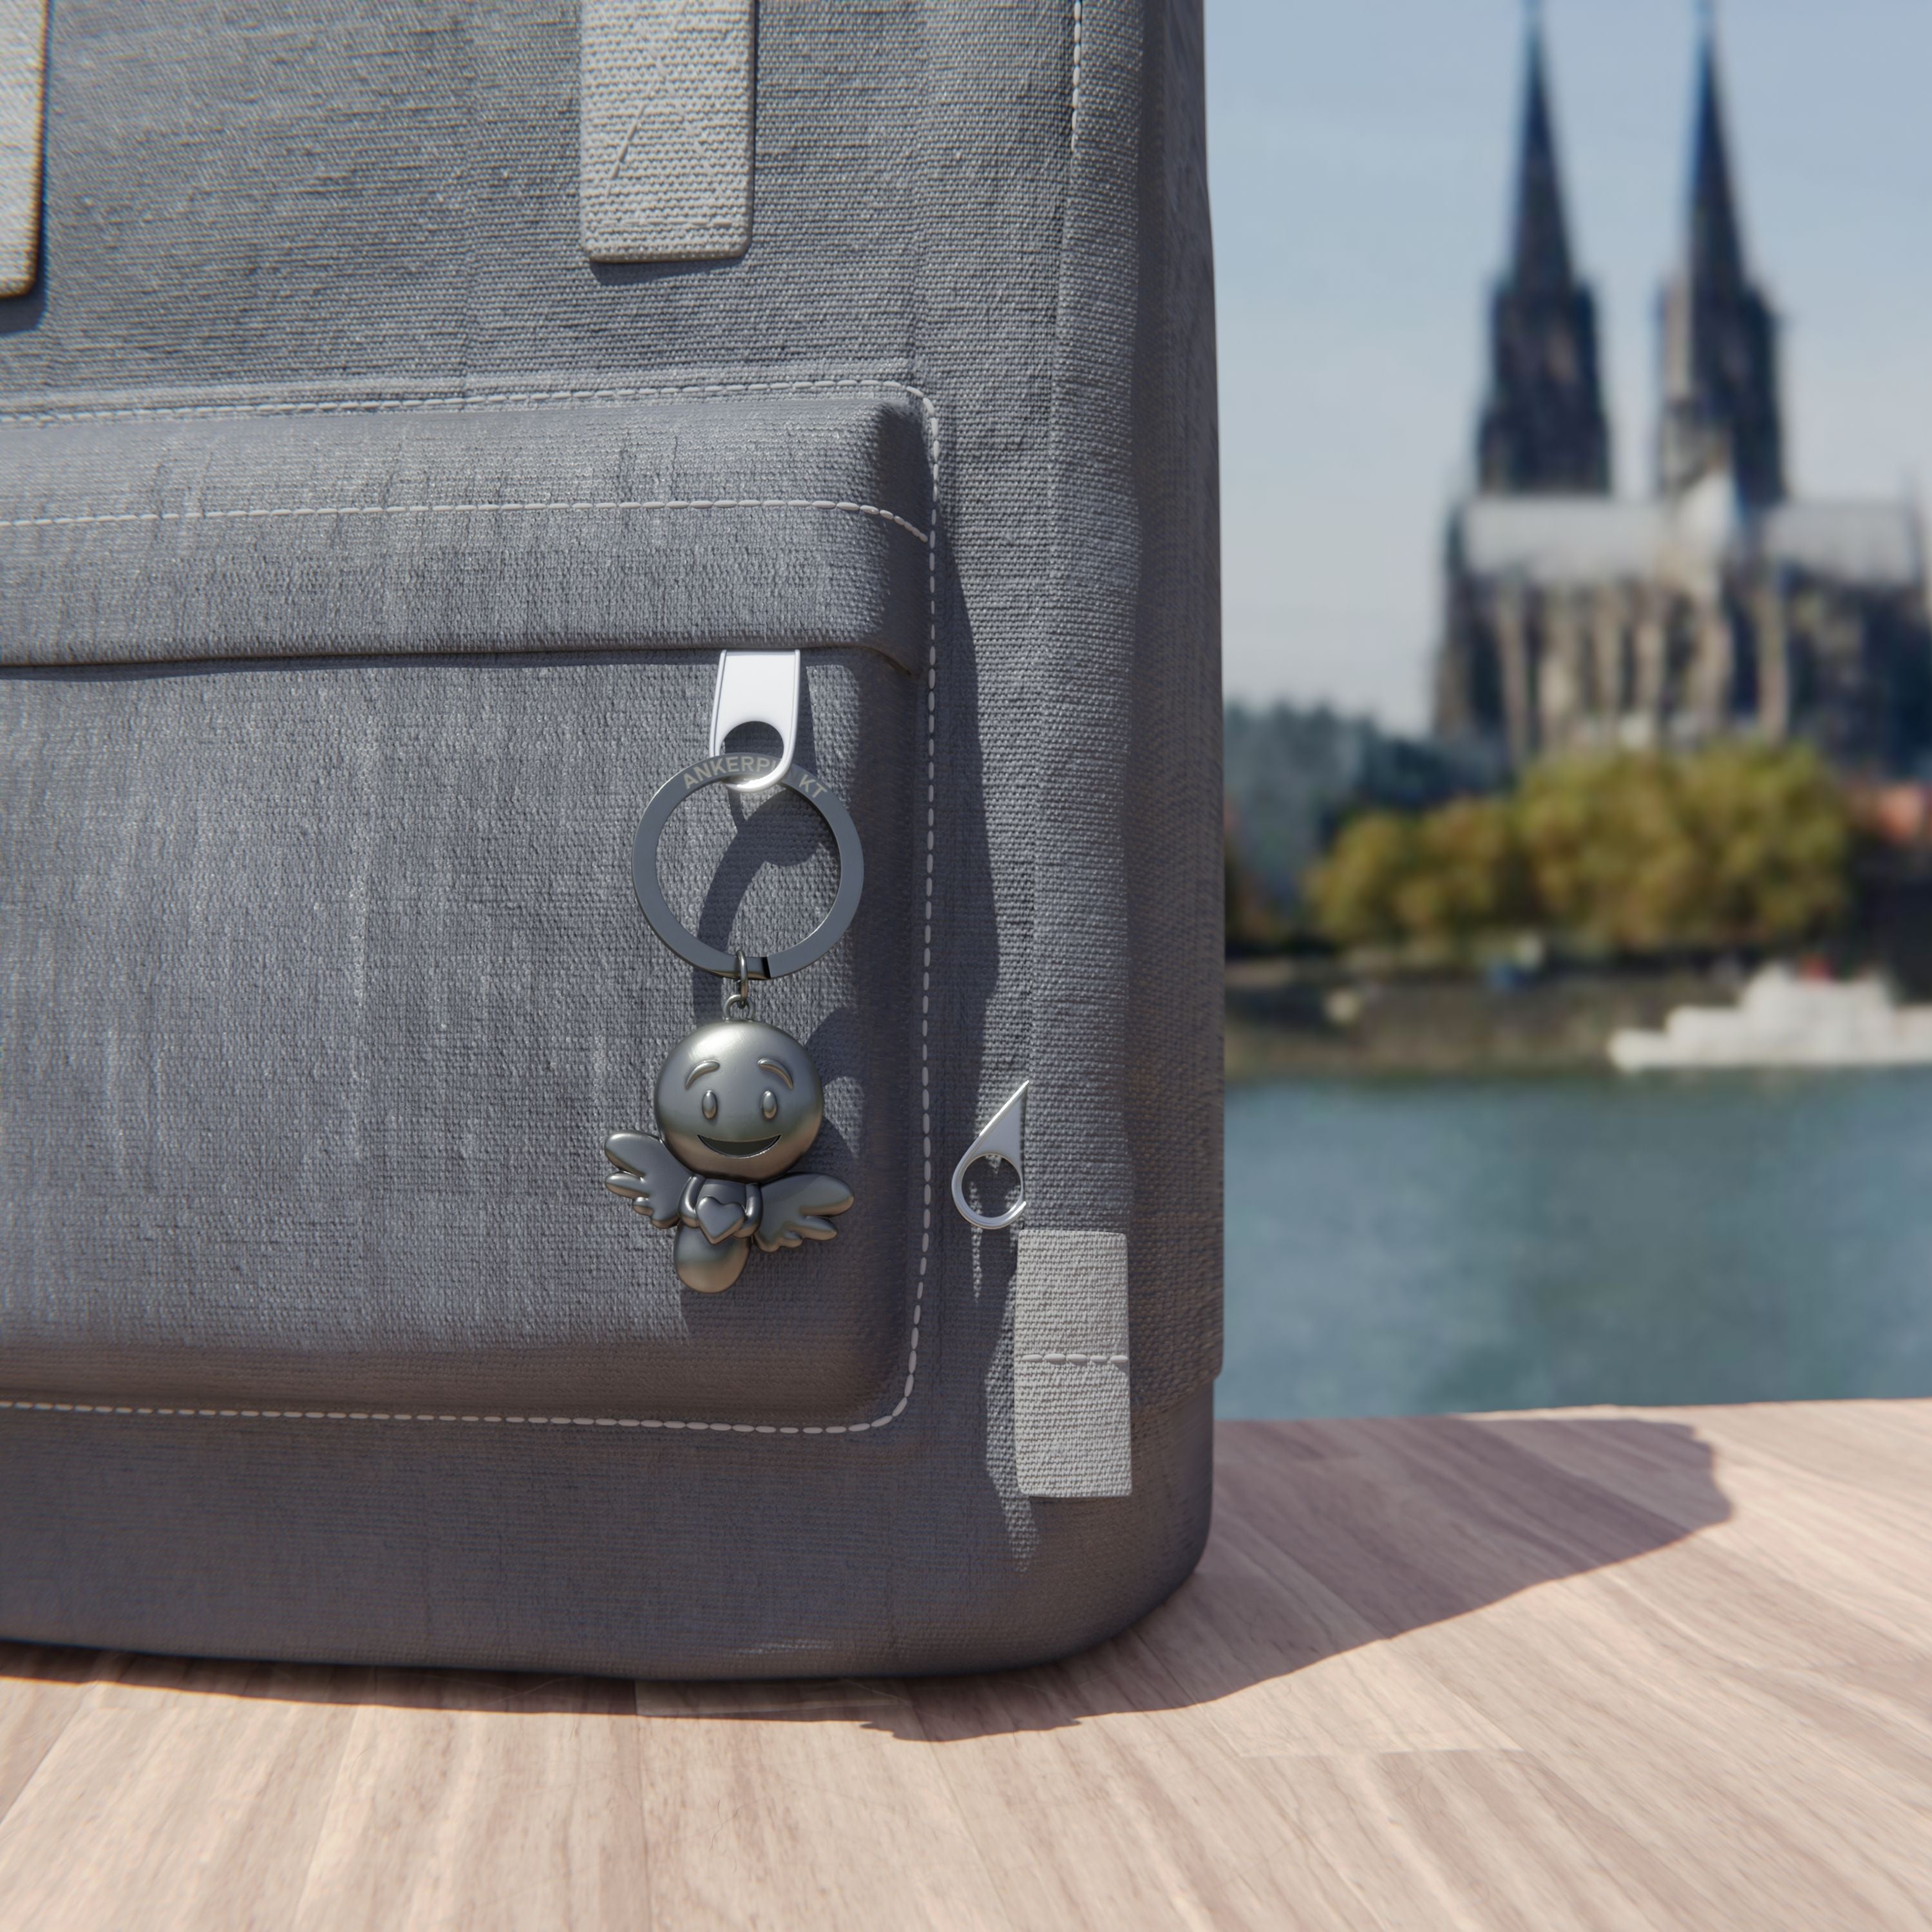 Schlüsselanhänger Lovely silber vintage  mit Rucksack am Rhein, im Hintergrund ist der Kölner Dom zu sehen